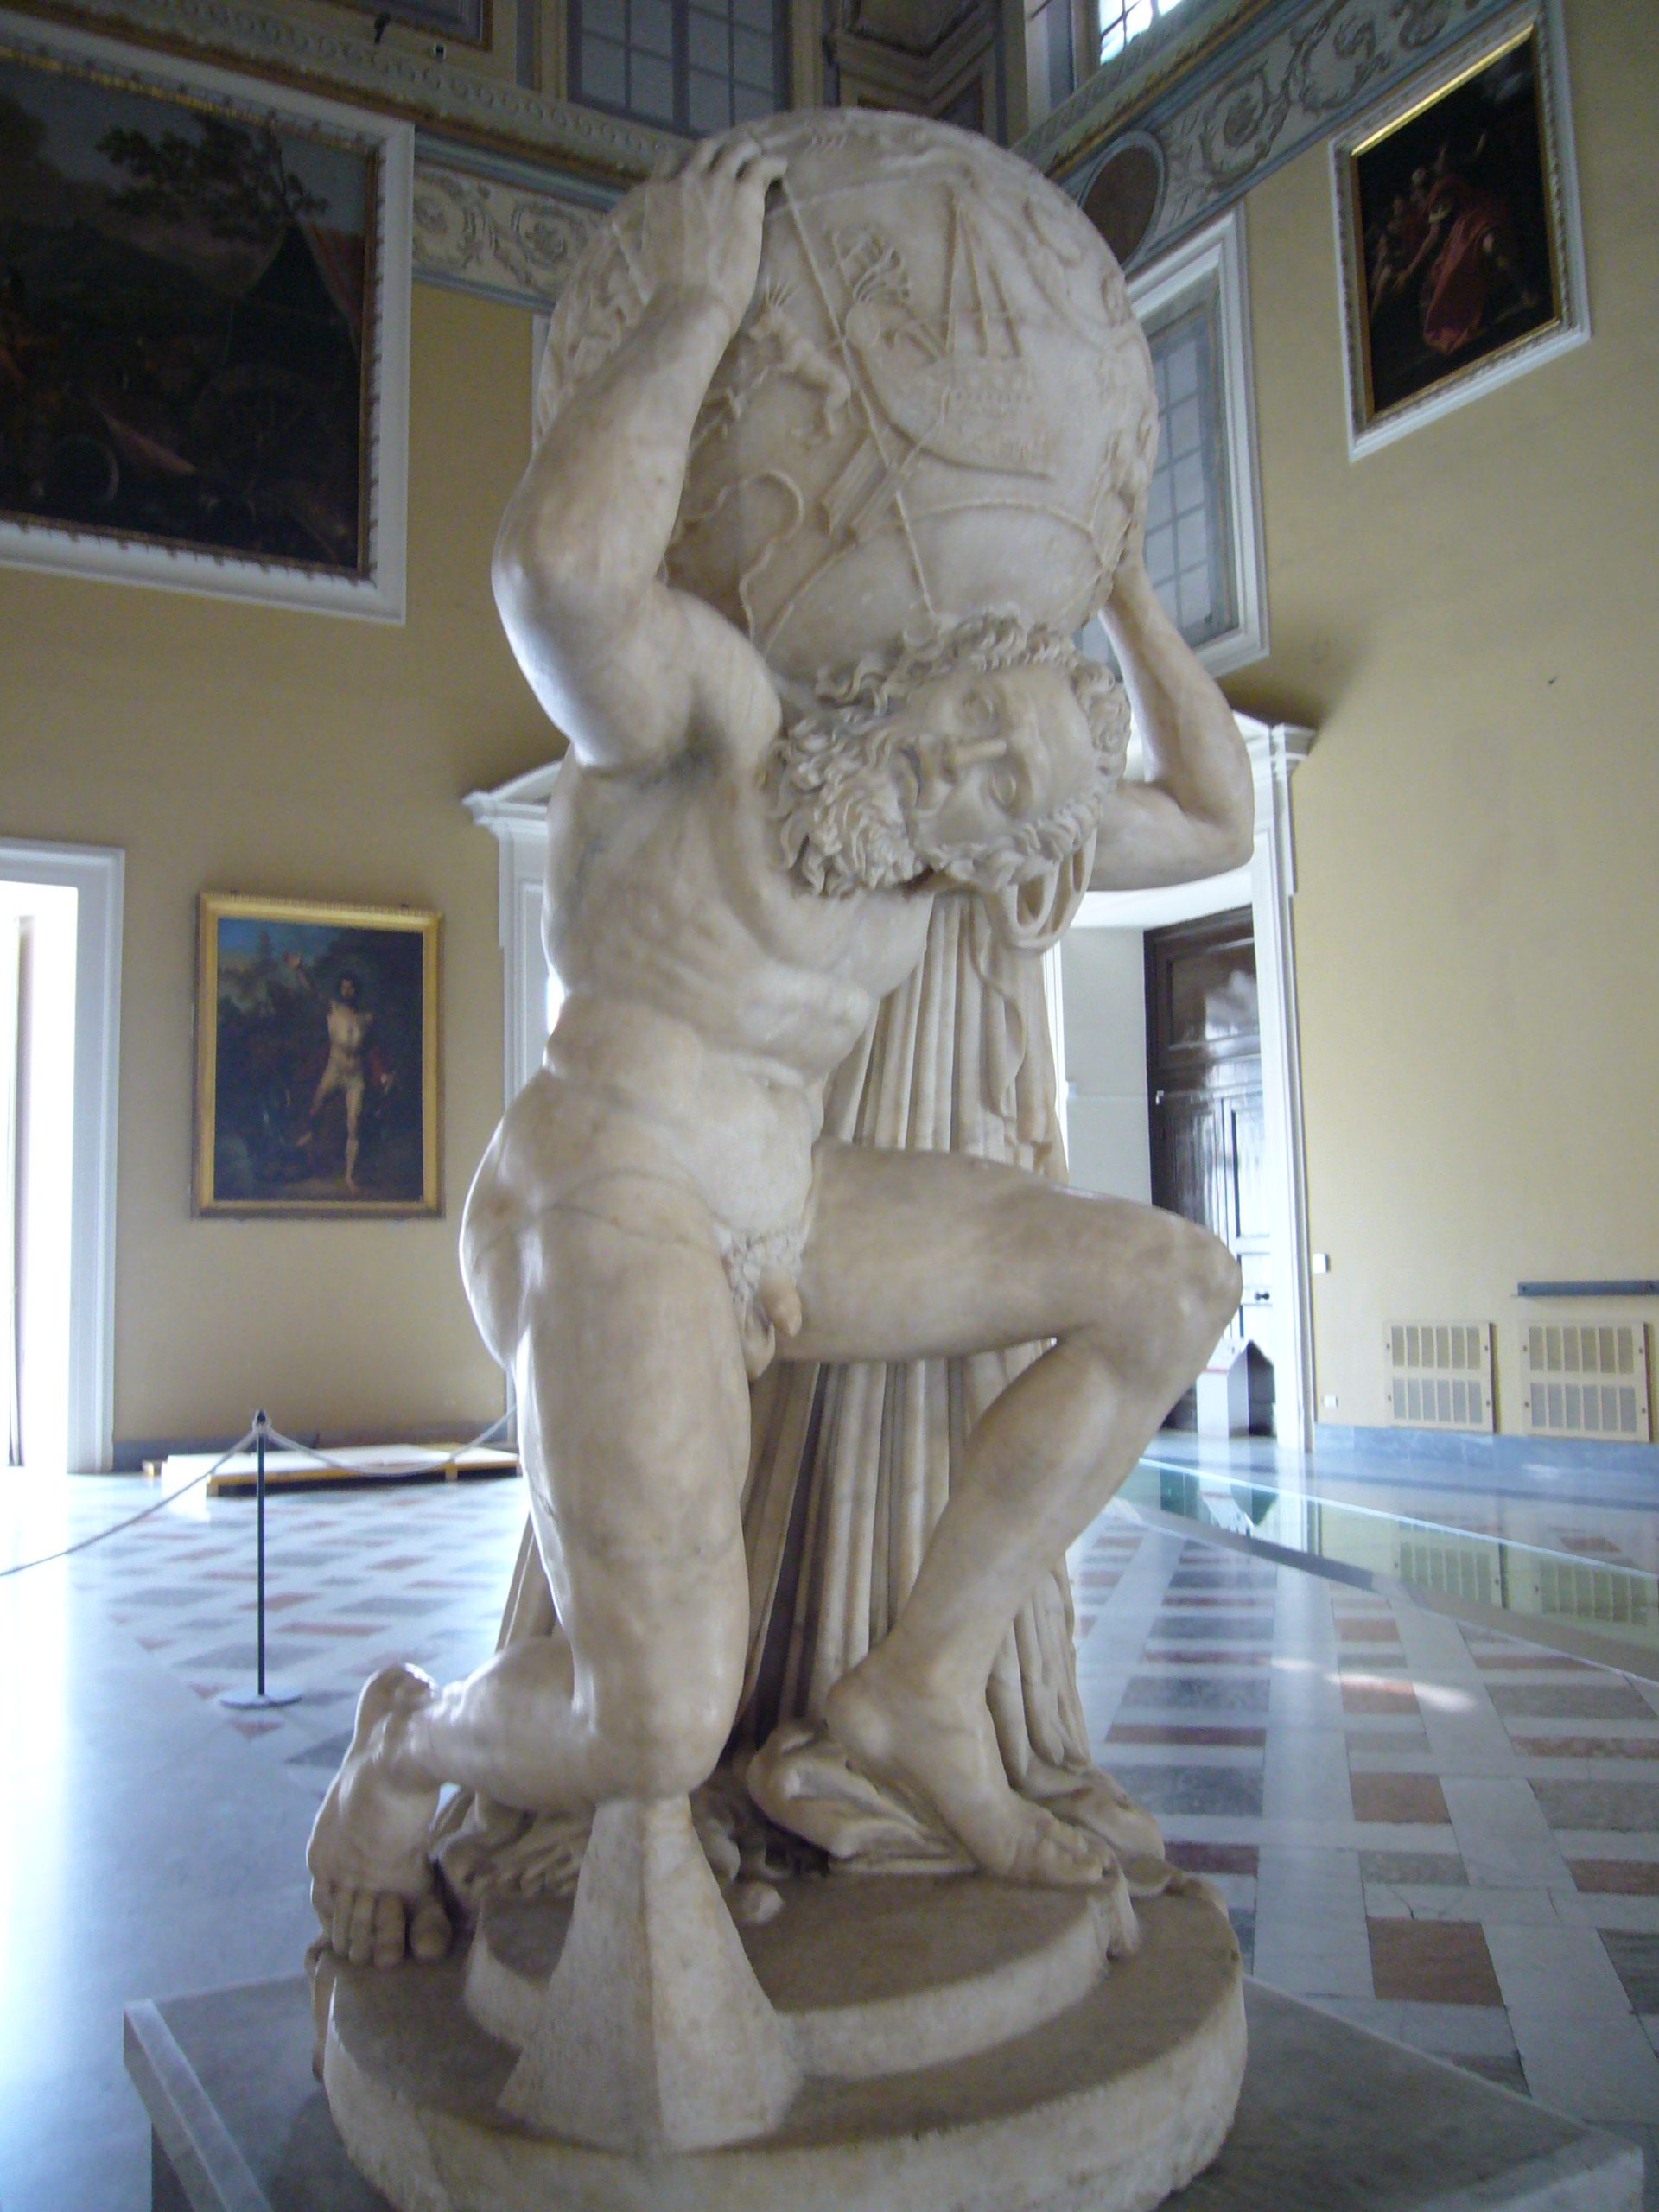 Farnese Atlas, sculpted ca. 150 CE